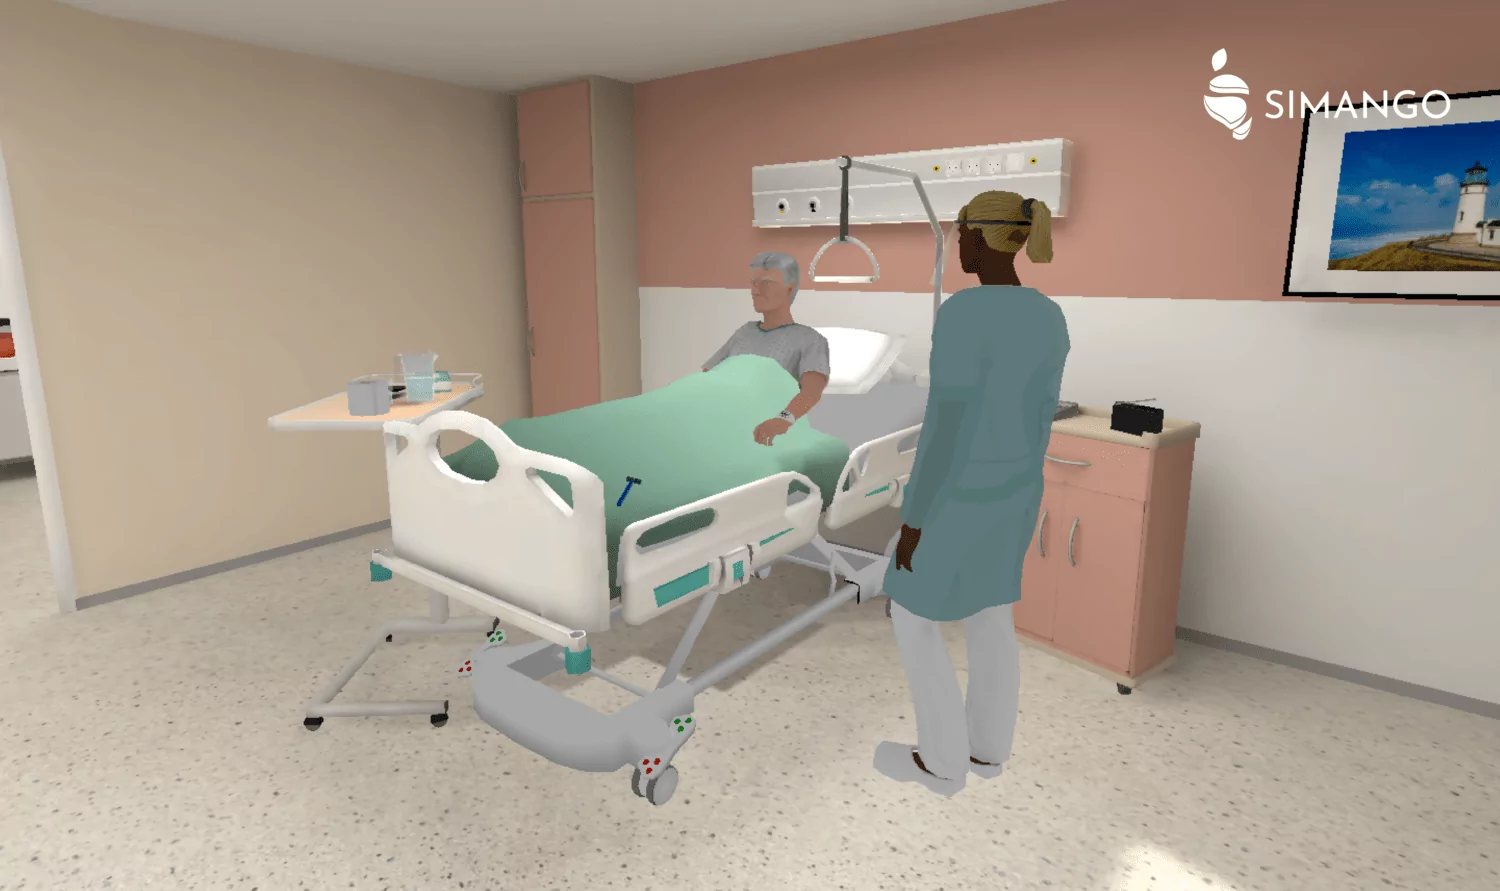 En situation de formation dans une chambre de patient, une professionnelle de santé prend en charge un patient